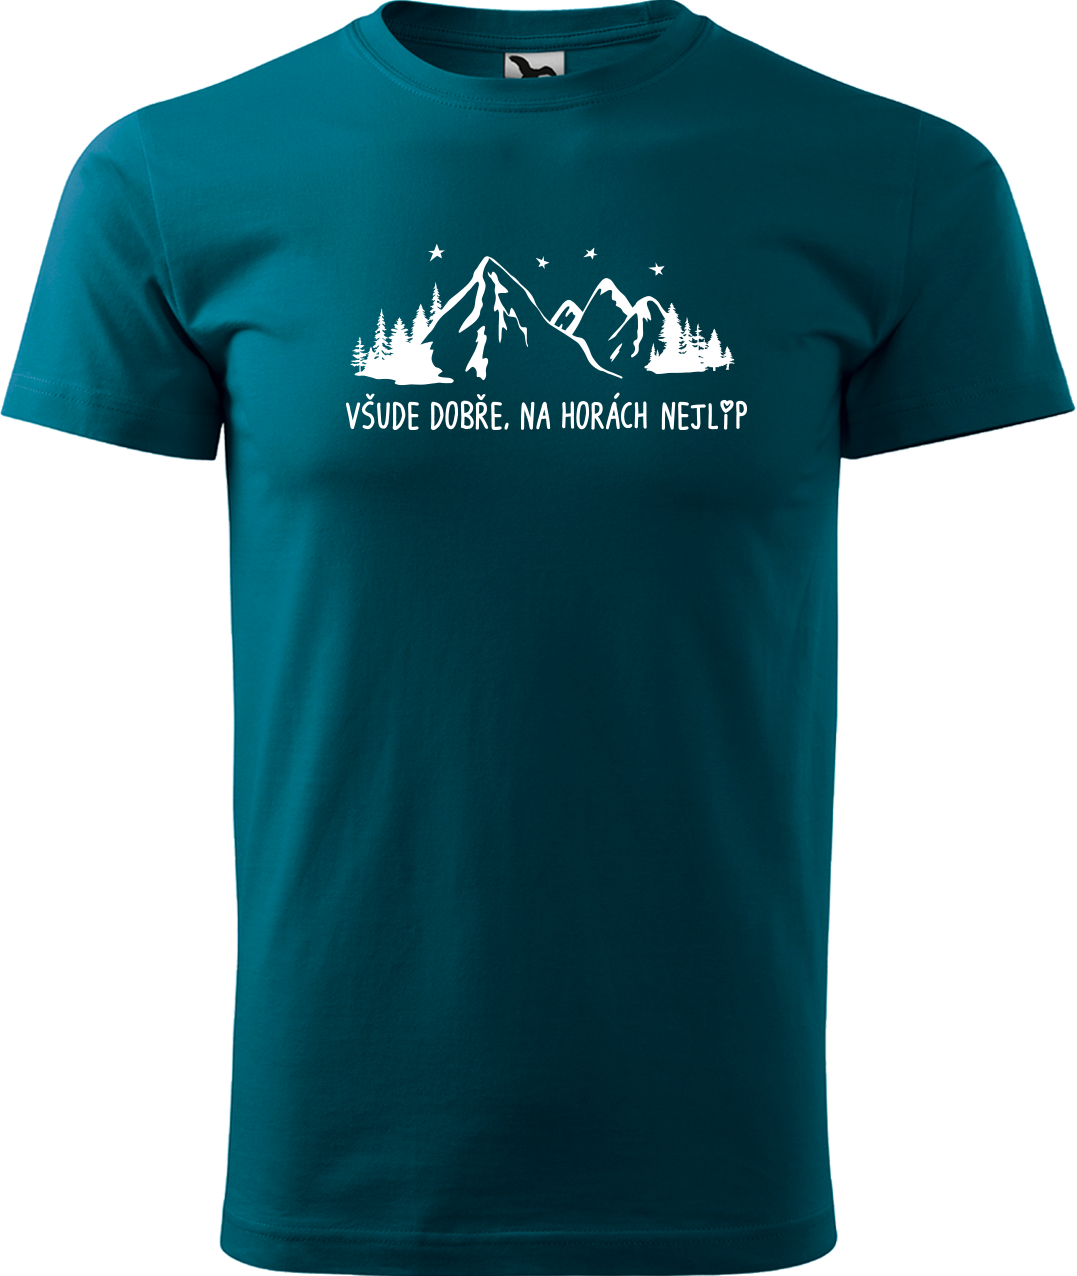 Pánské tričko na hory - Všude dobře, na horách nejlíp Velikost: XL, Barva: Petrolejová (93)